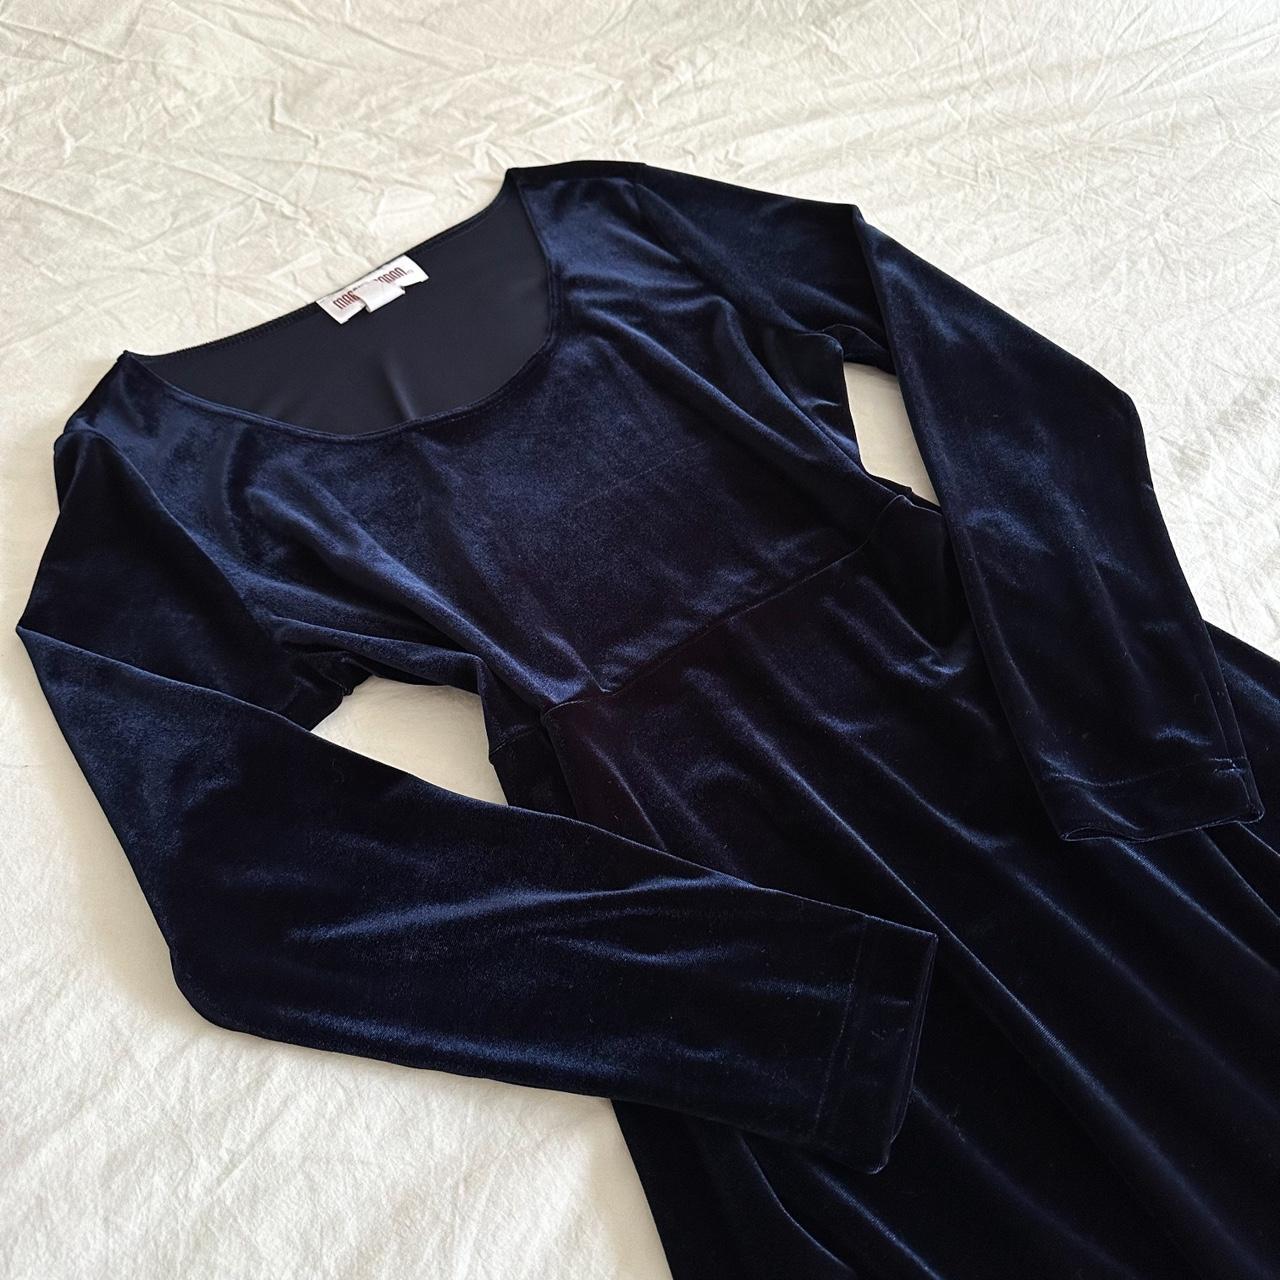 Vintage 80’s blue velvet maxi dress. Witchy and... - Depop